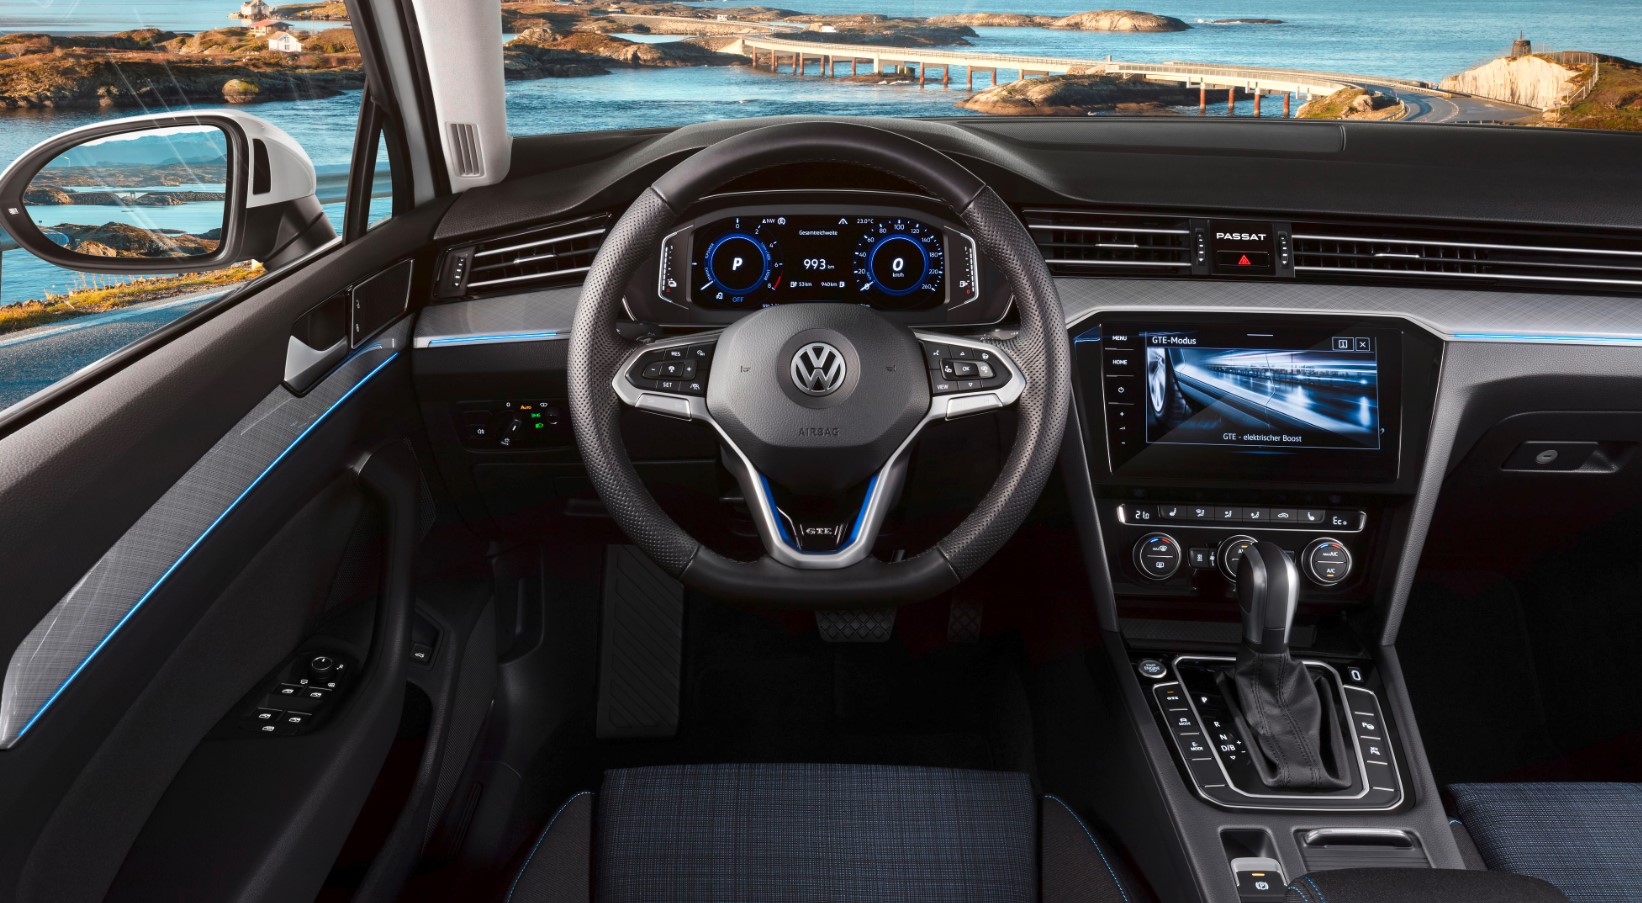 Enzovoorts Vertrek Armstrong De prijs van de nieuwe Volkswagen Passat GTE zijn bekendgemaakt -